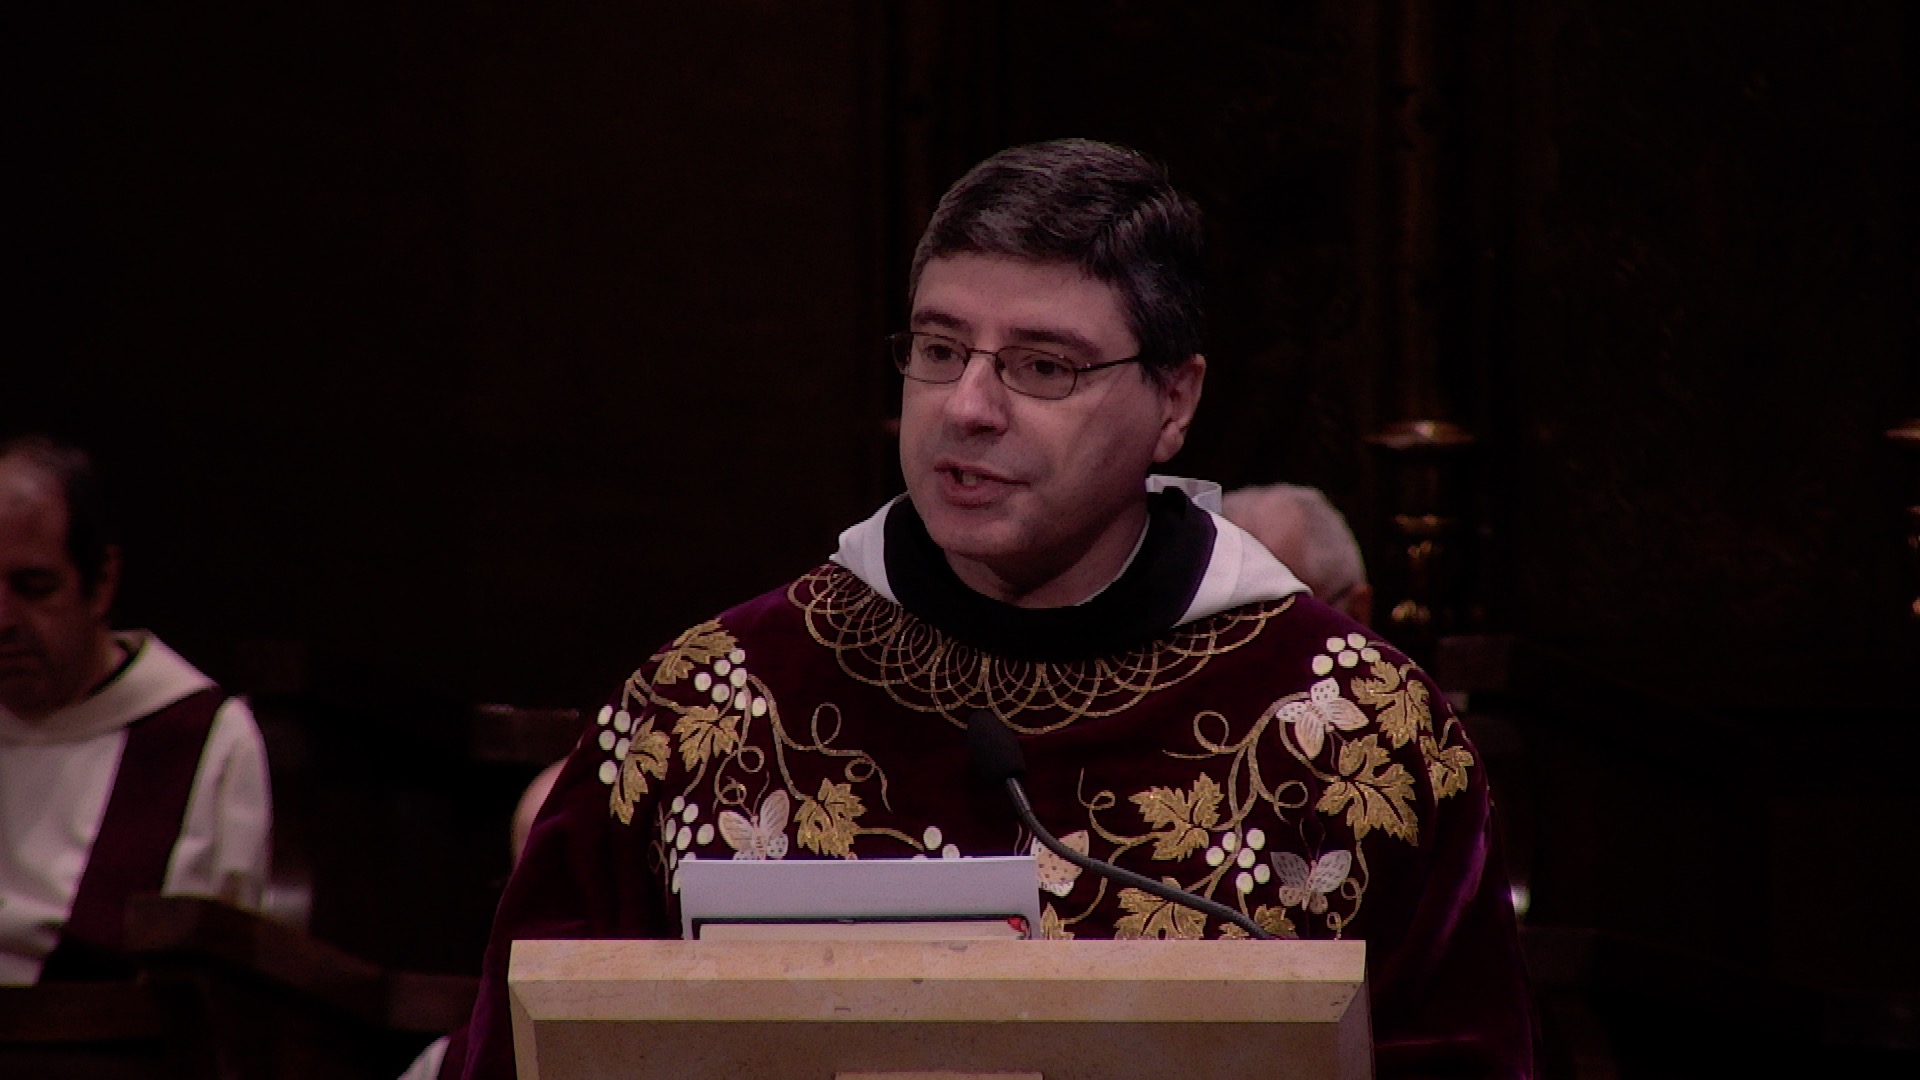 Homilia del diumenge I d'Advent (Cicle B), predicada pel P. Bernat Juliol, prior de Montserrat.